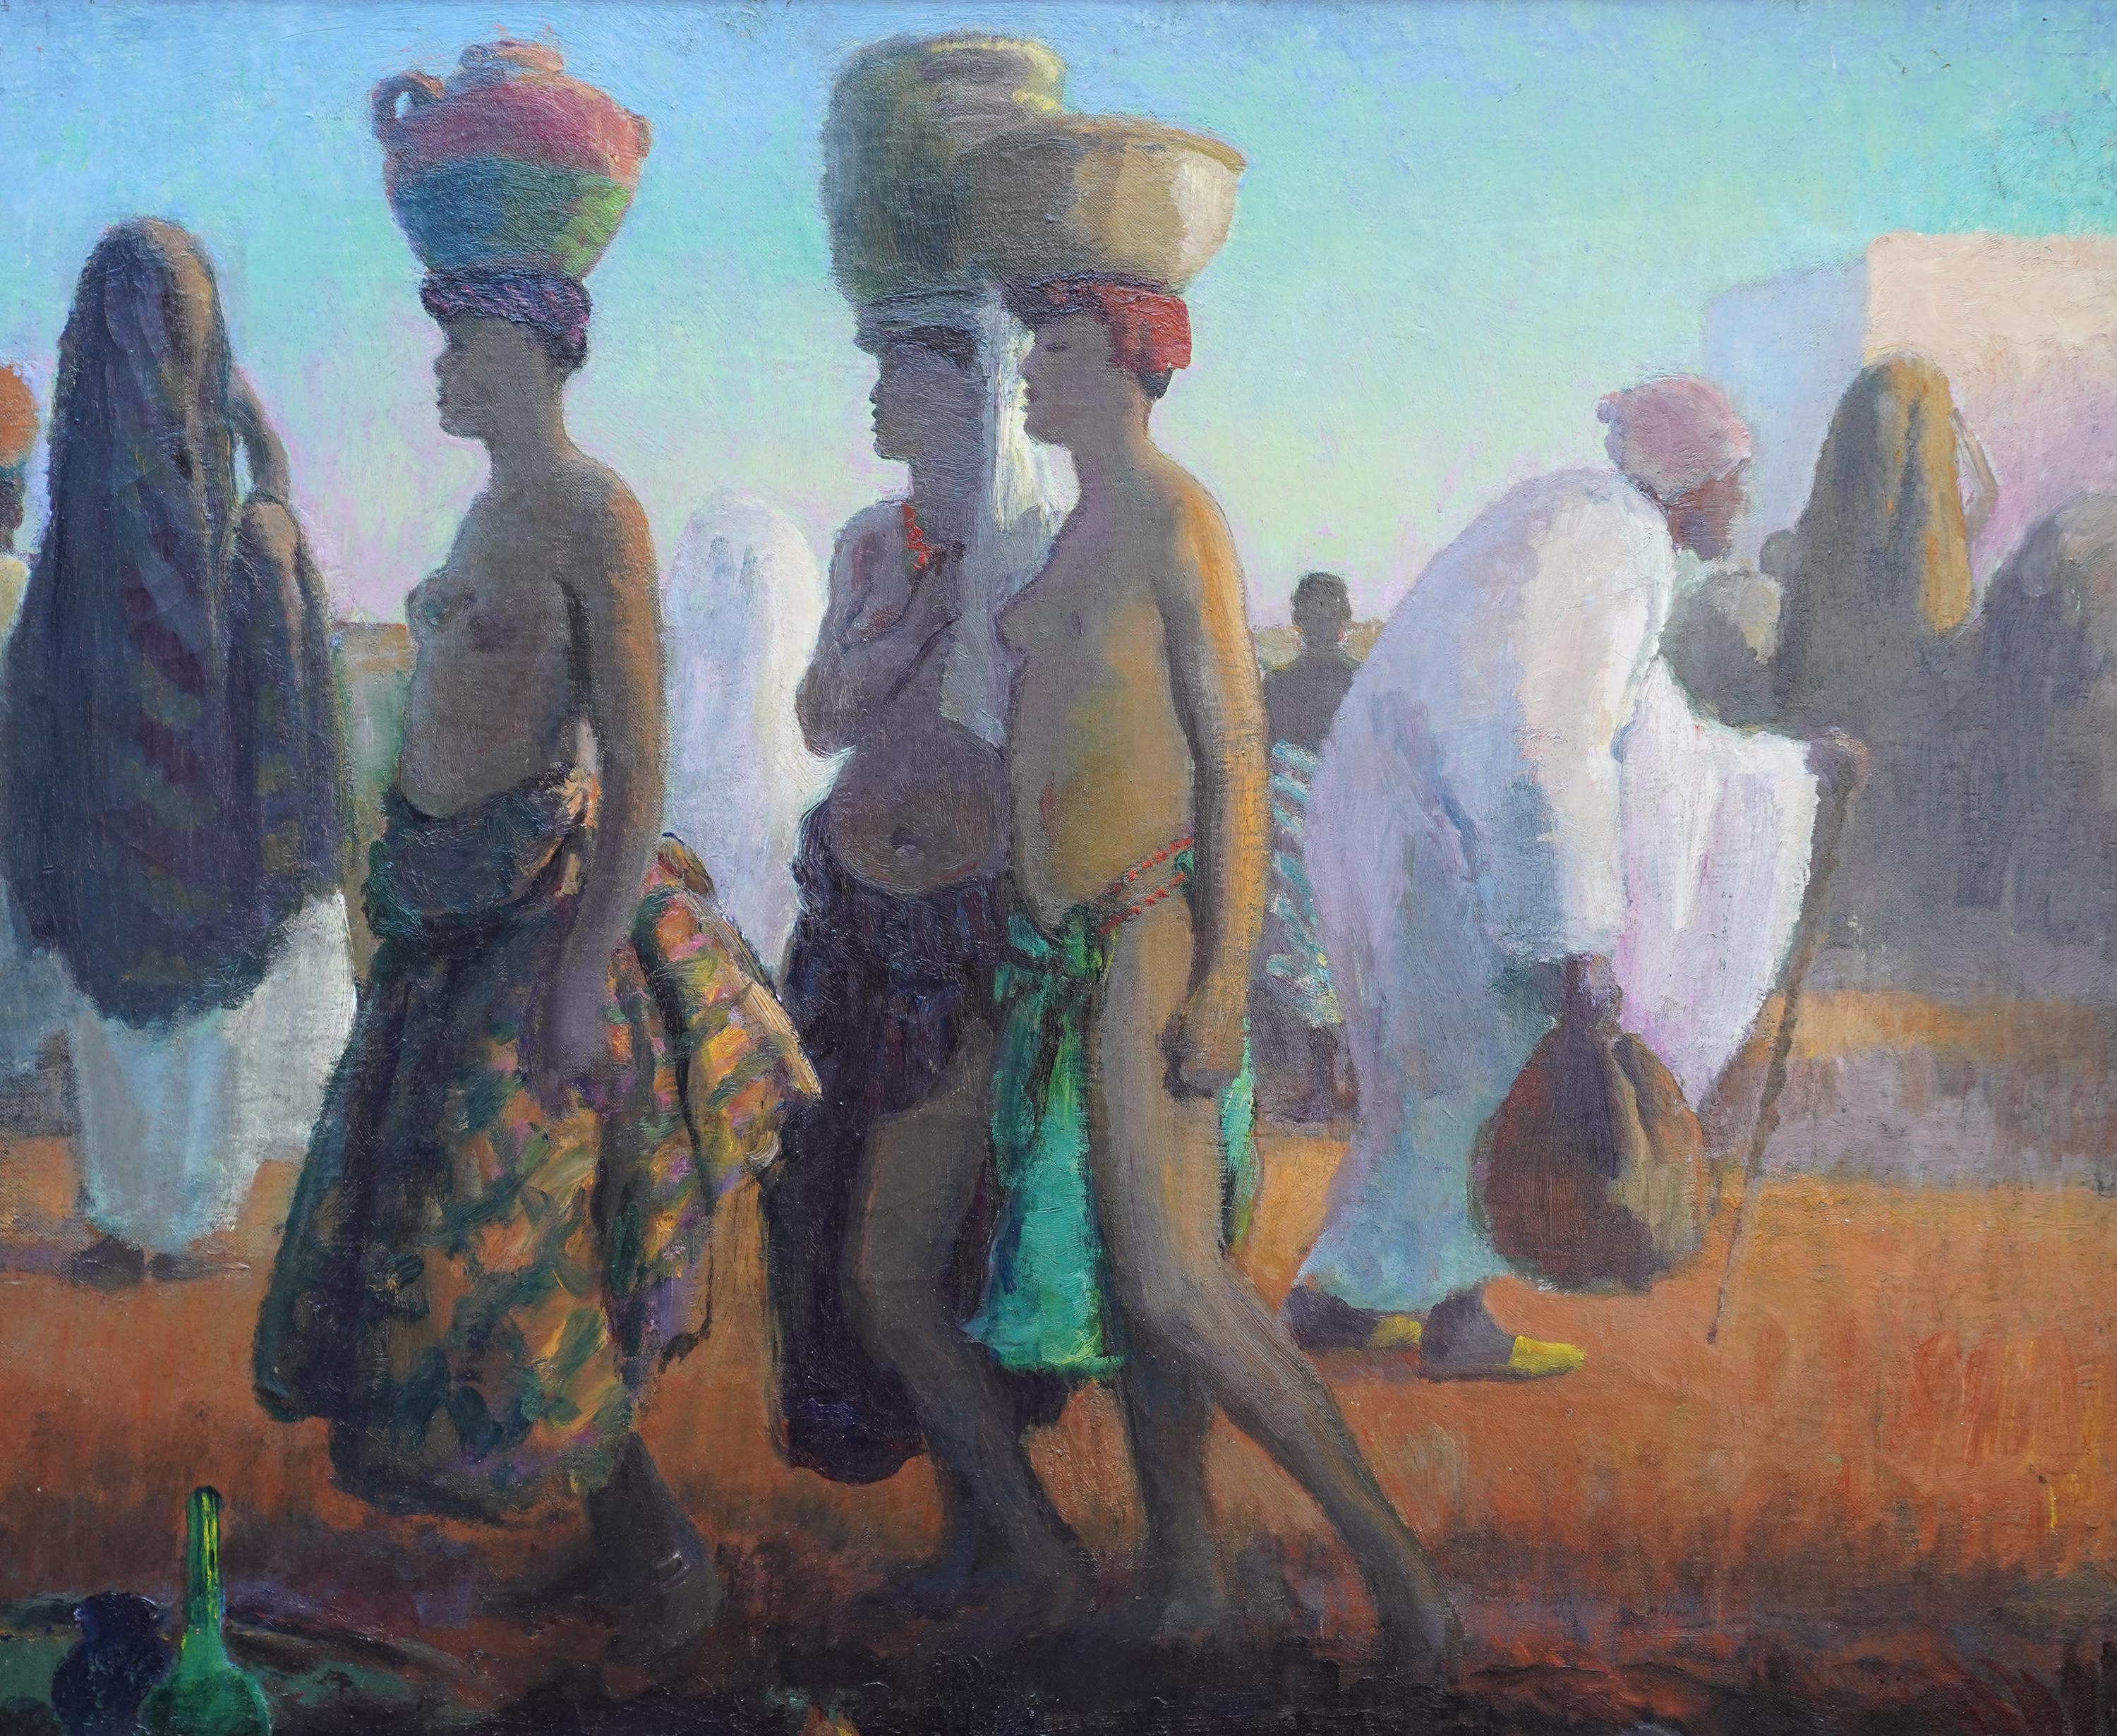 Ritratto di portatori d'acqua, Africa - pittura ad olio di arte orientalista britannica del 1920 - Painting di Spencer Pryse